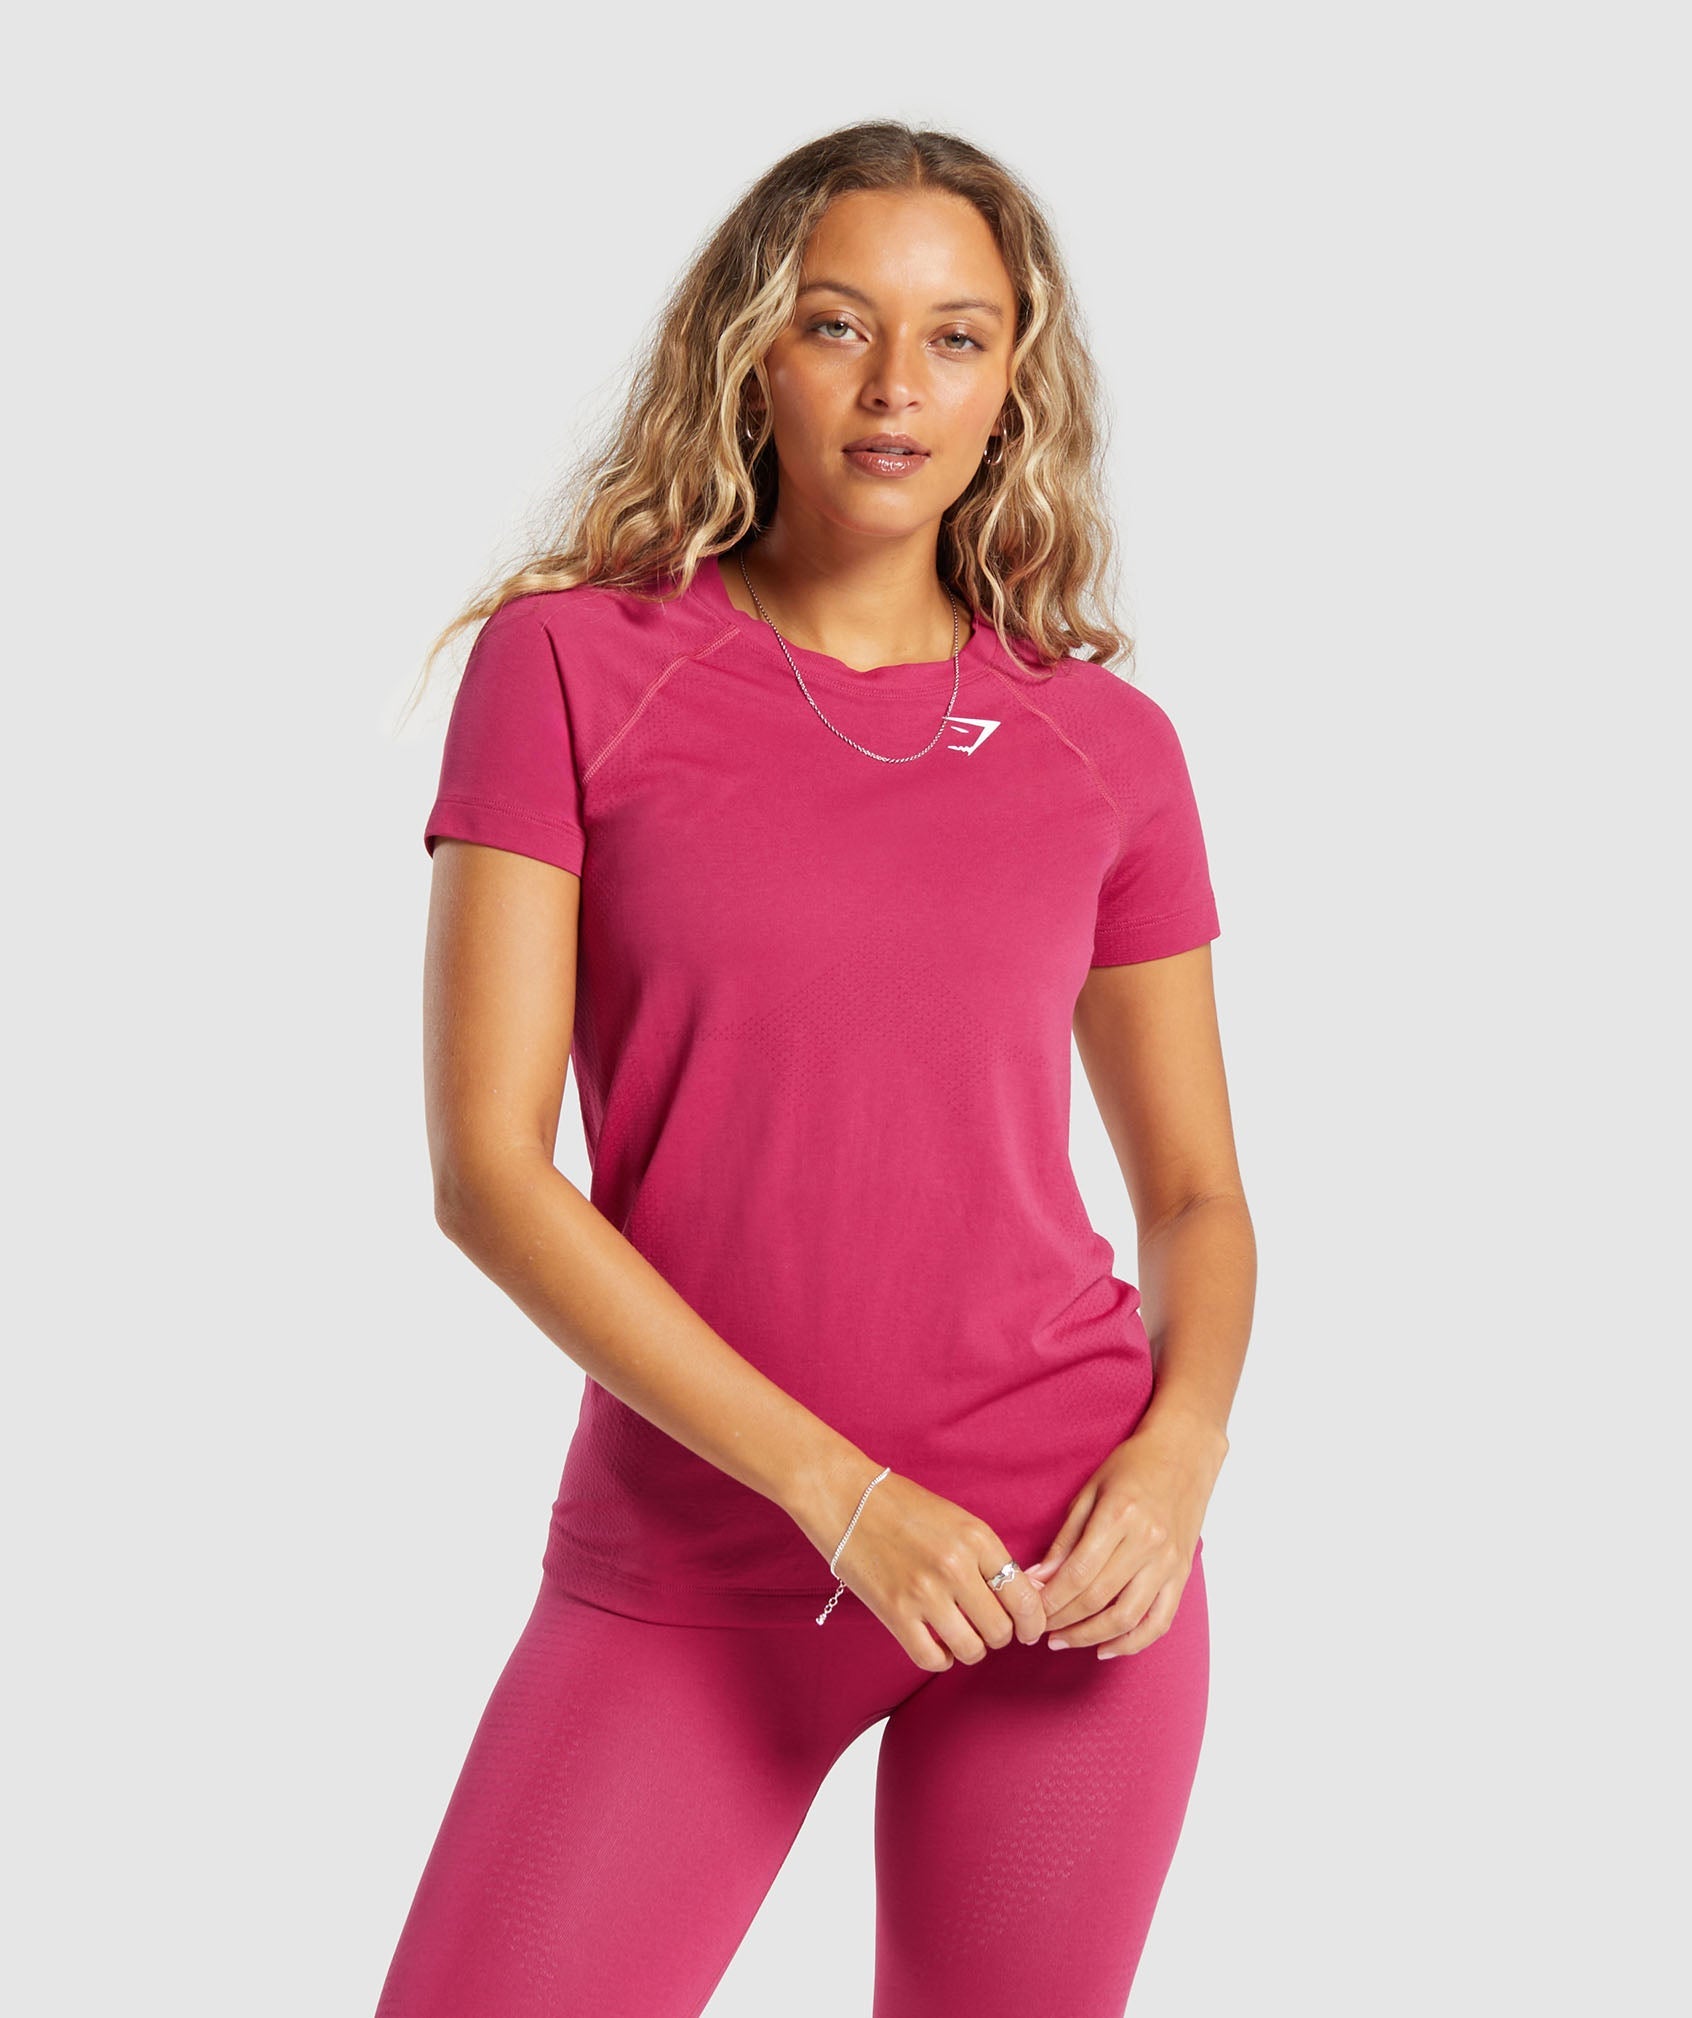 Vital Seamless 2.0 Light T-Shirt in Vintage Pink/Marl is niet op voorraad